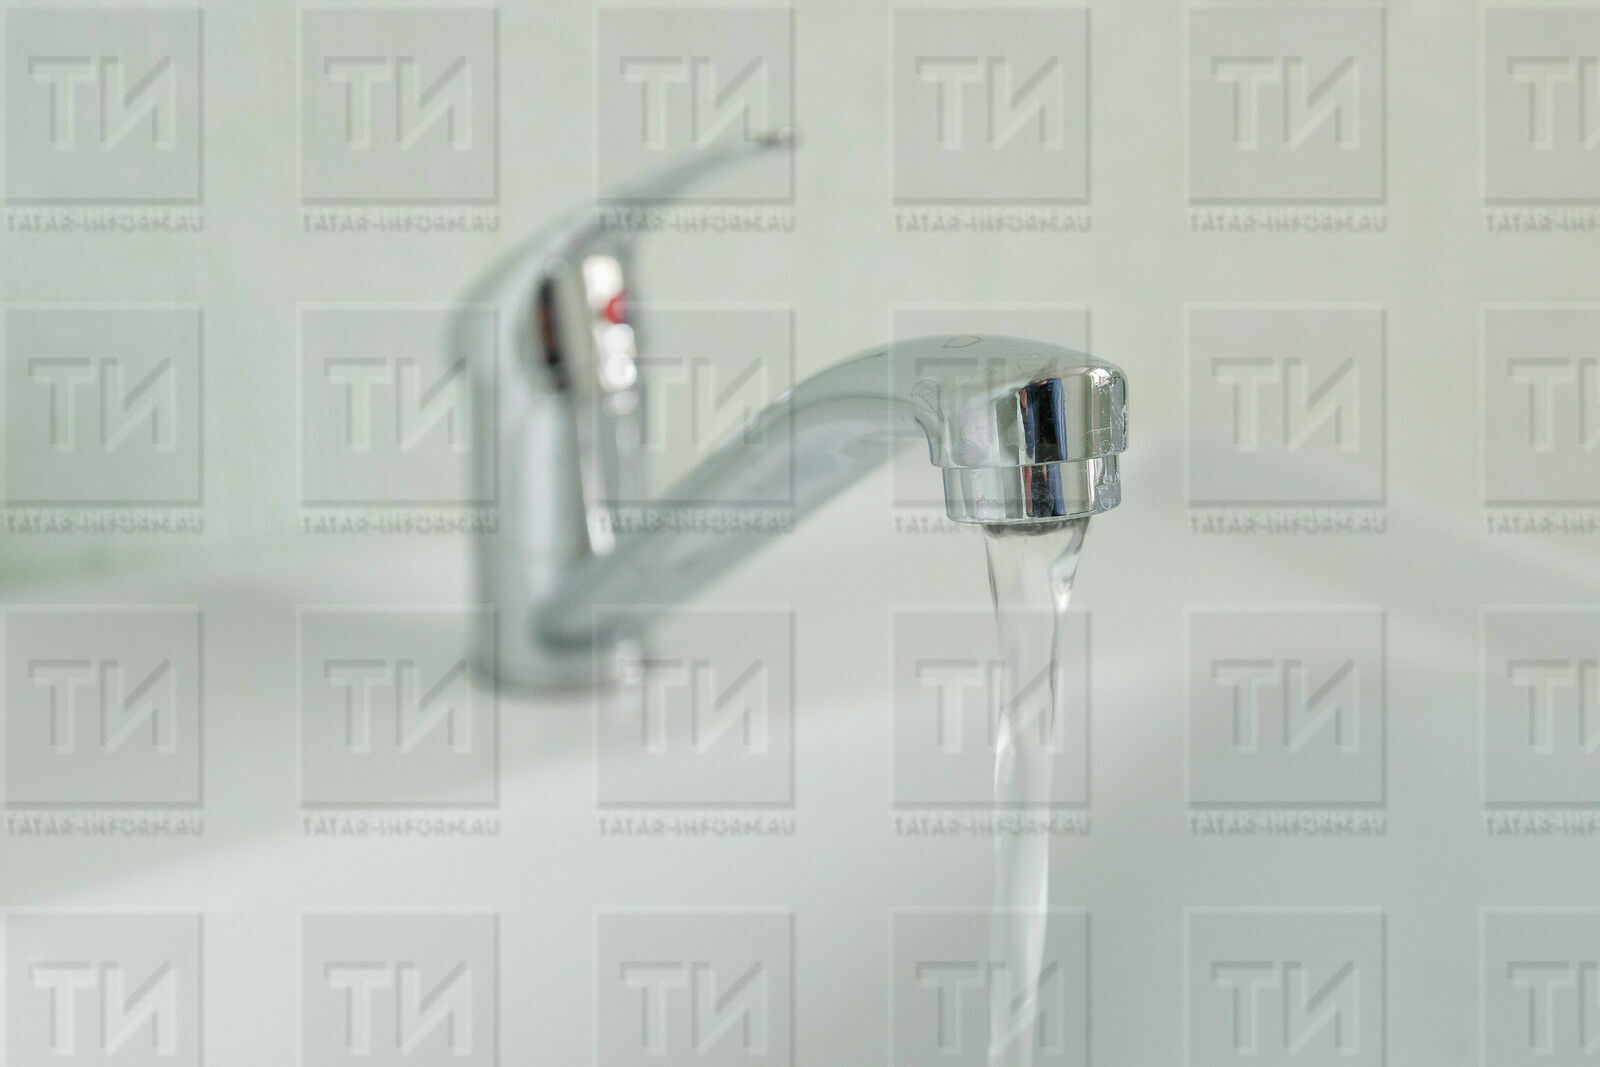 В Альметьевске в некоторых домах и учреждениях отключат холодную воду